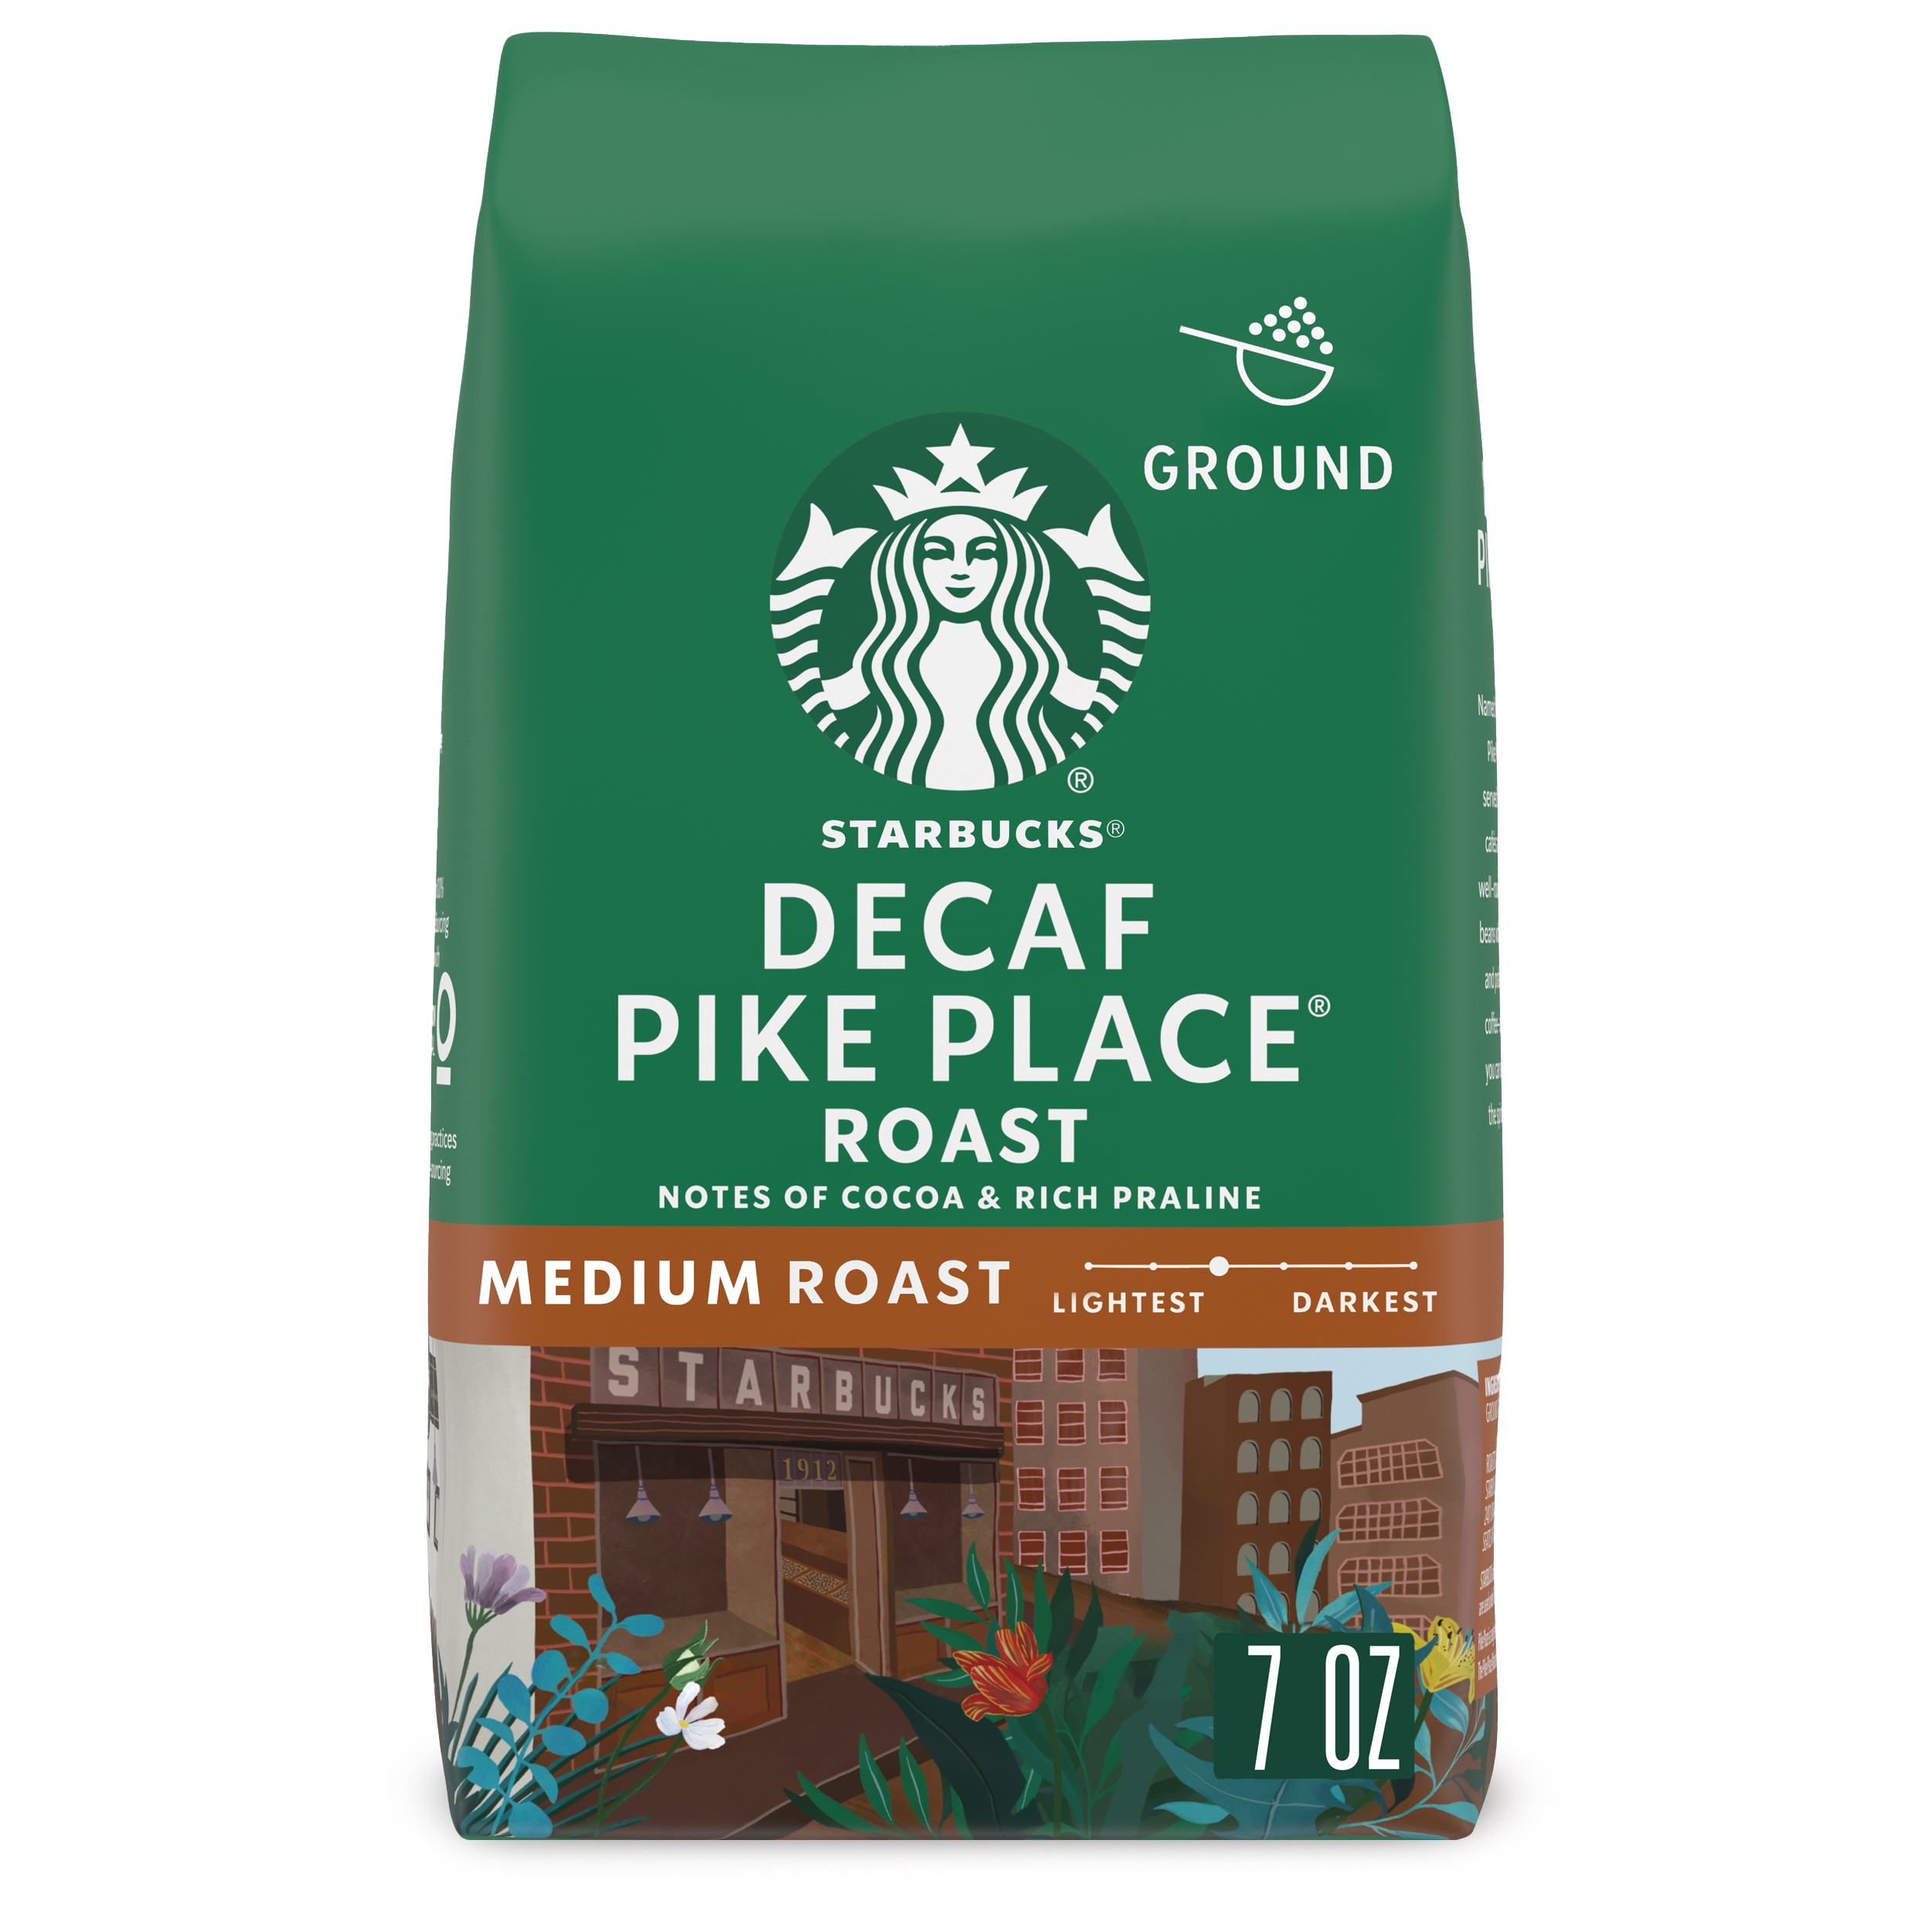 Starbucks Decaf Pike Place Roast, Ground Coffee, Medium Roast, 7 oz - image 1 of 8